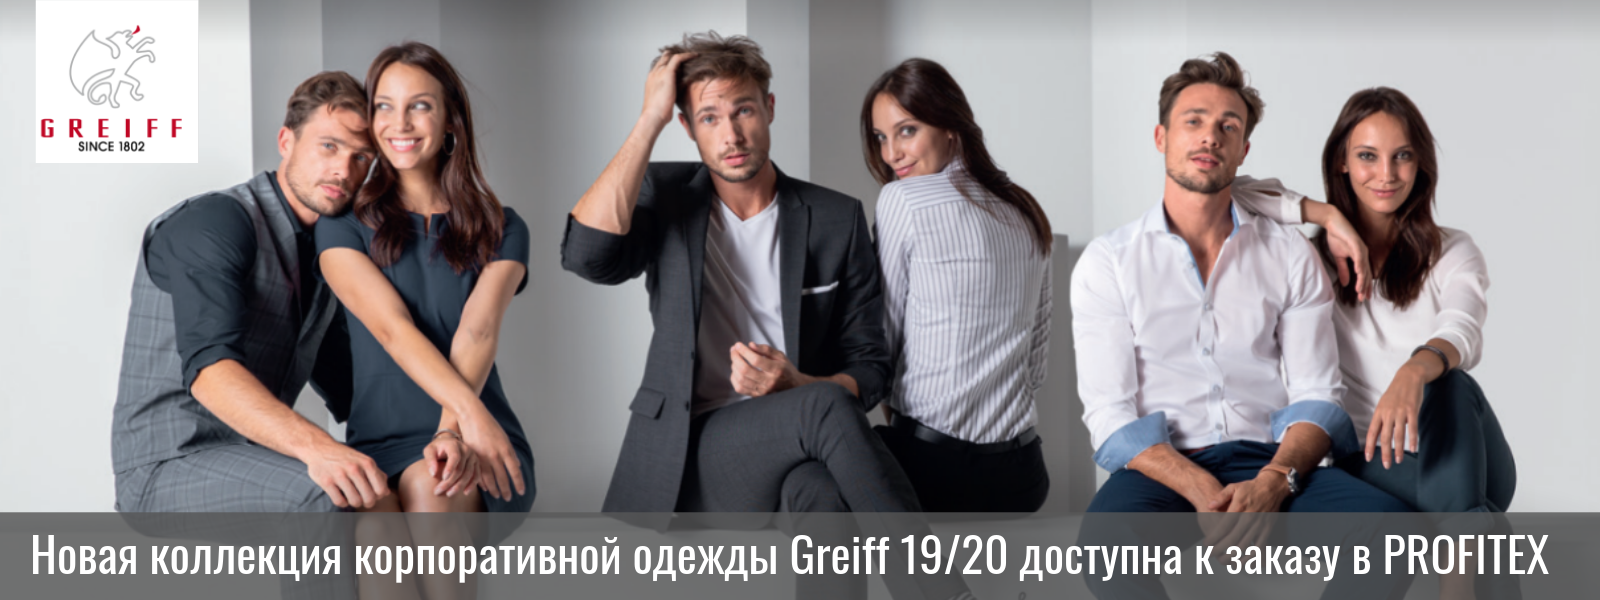 Новая_коллекция_корпоративной_одежды_Greif_доступна_к_заказу_в_PROFITEX